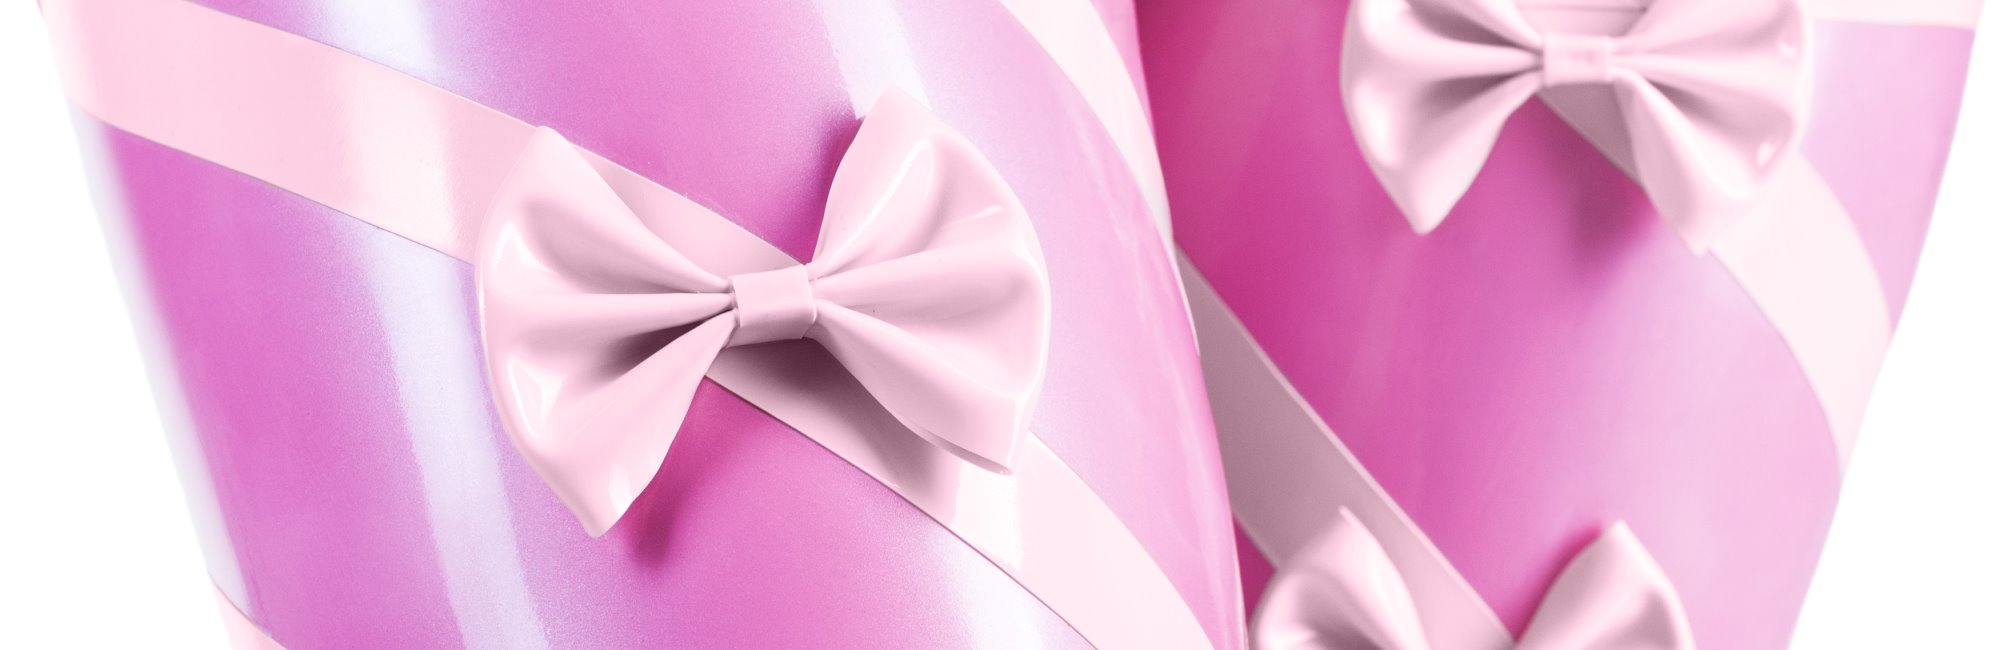 Detail latexových punčoch s proužky a mašličkami v růžové barvě.